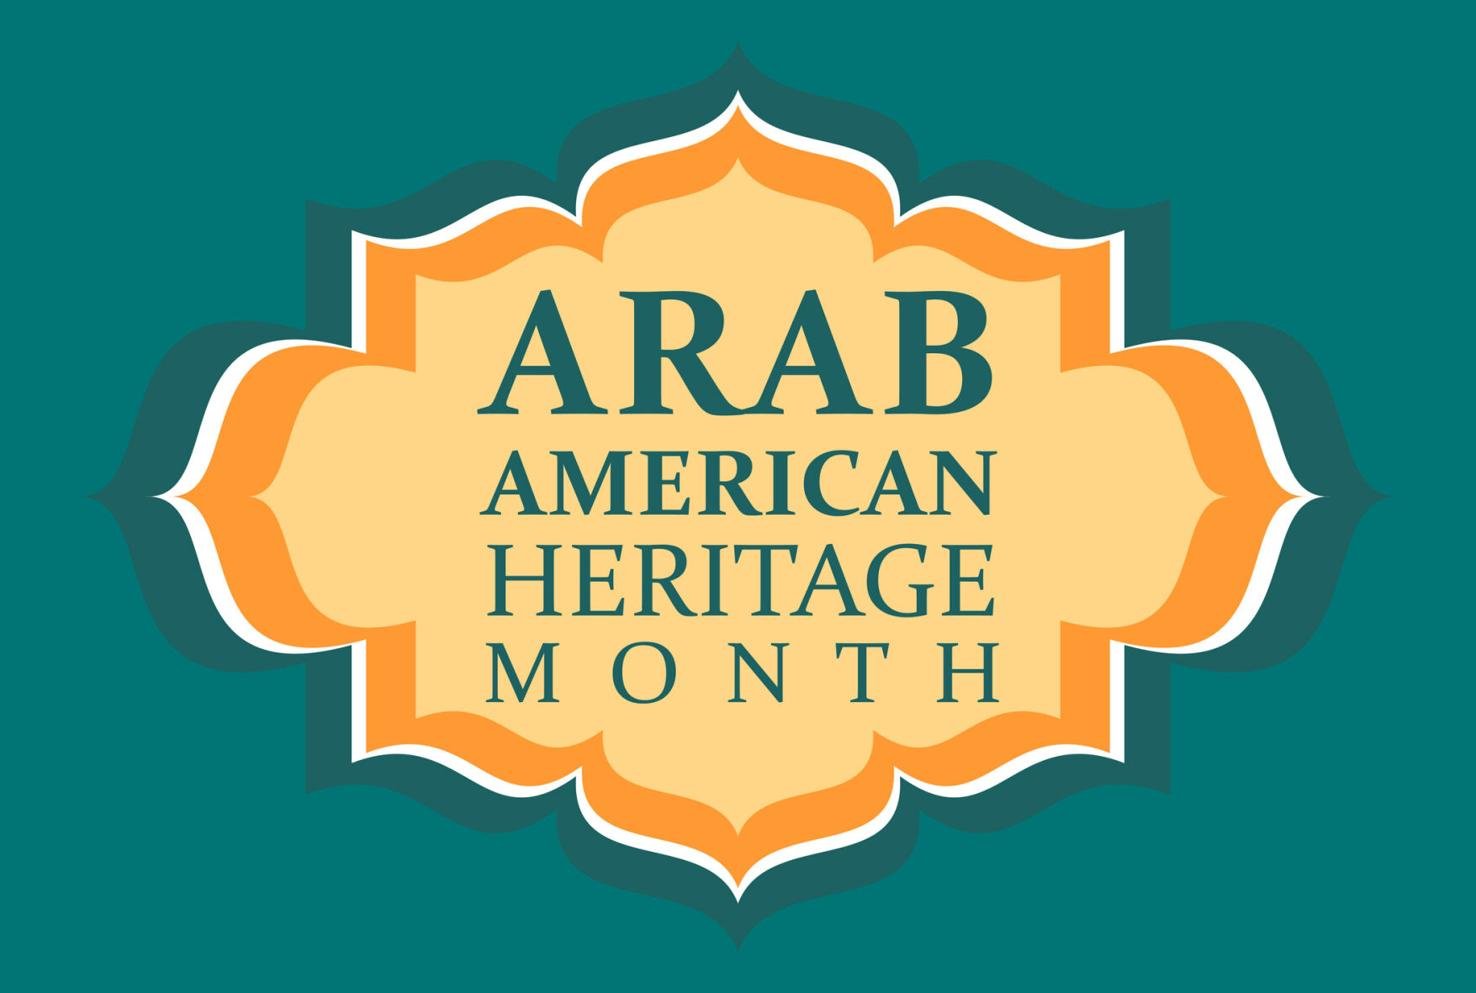 Arab American Heritage Month begins as April kicks off News